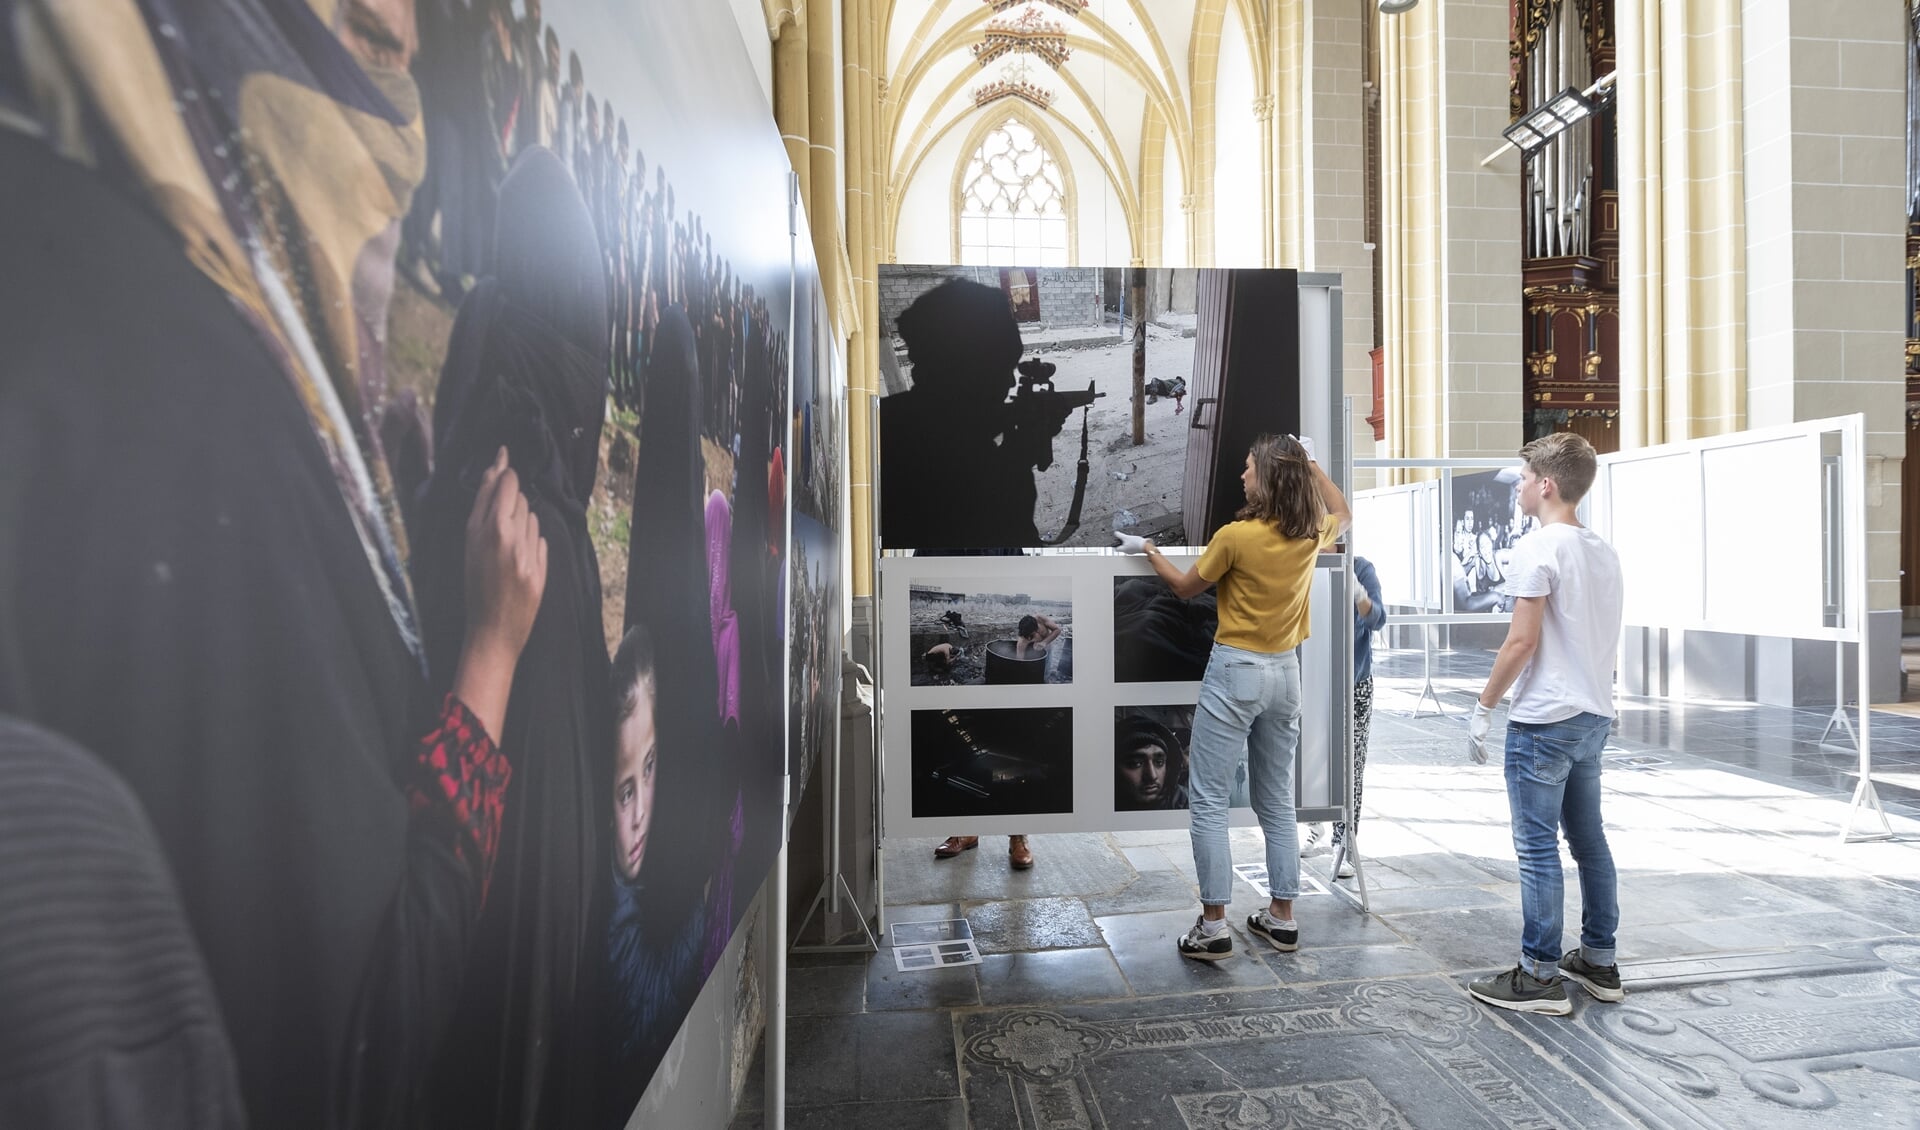 Het bestuur van World Press Photo Zutphen bouwt de tentoonstelling op in de Walburgiskerk. Vanaf vrijdag 6 juli 10.30 uur is de tentoontstelling geopend voor het publiek. Foto: Patrick van Gemert/Zutphens Persbureau